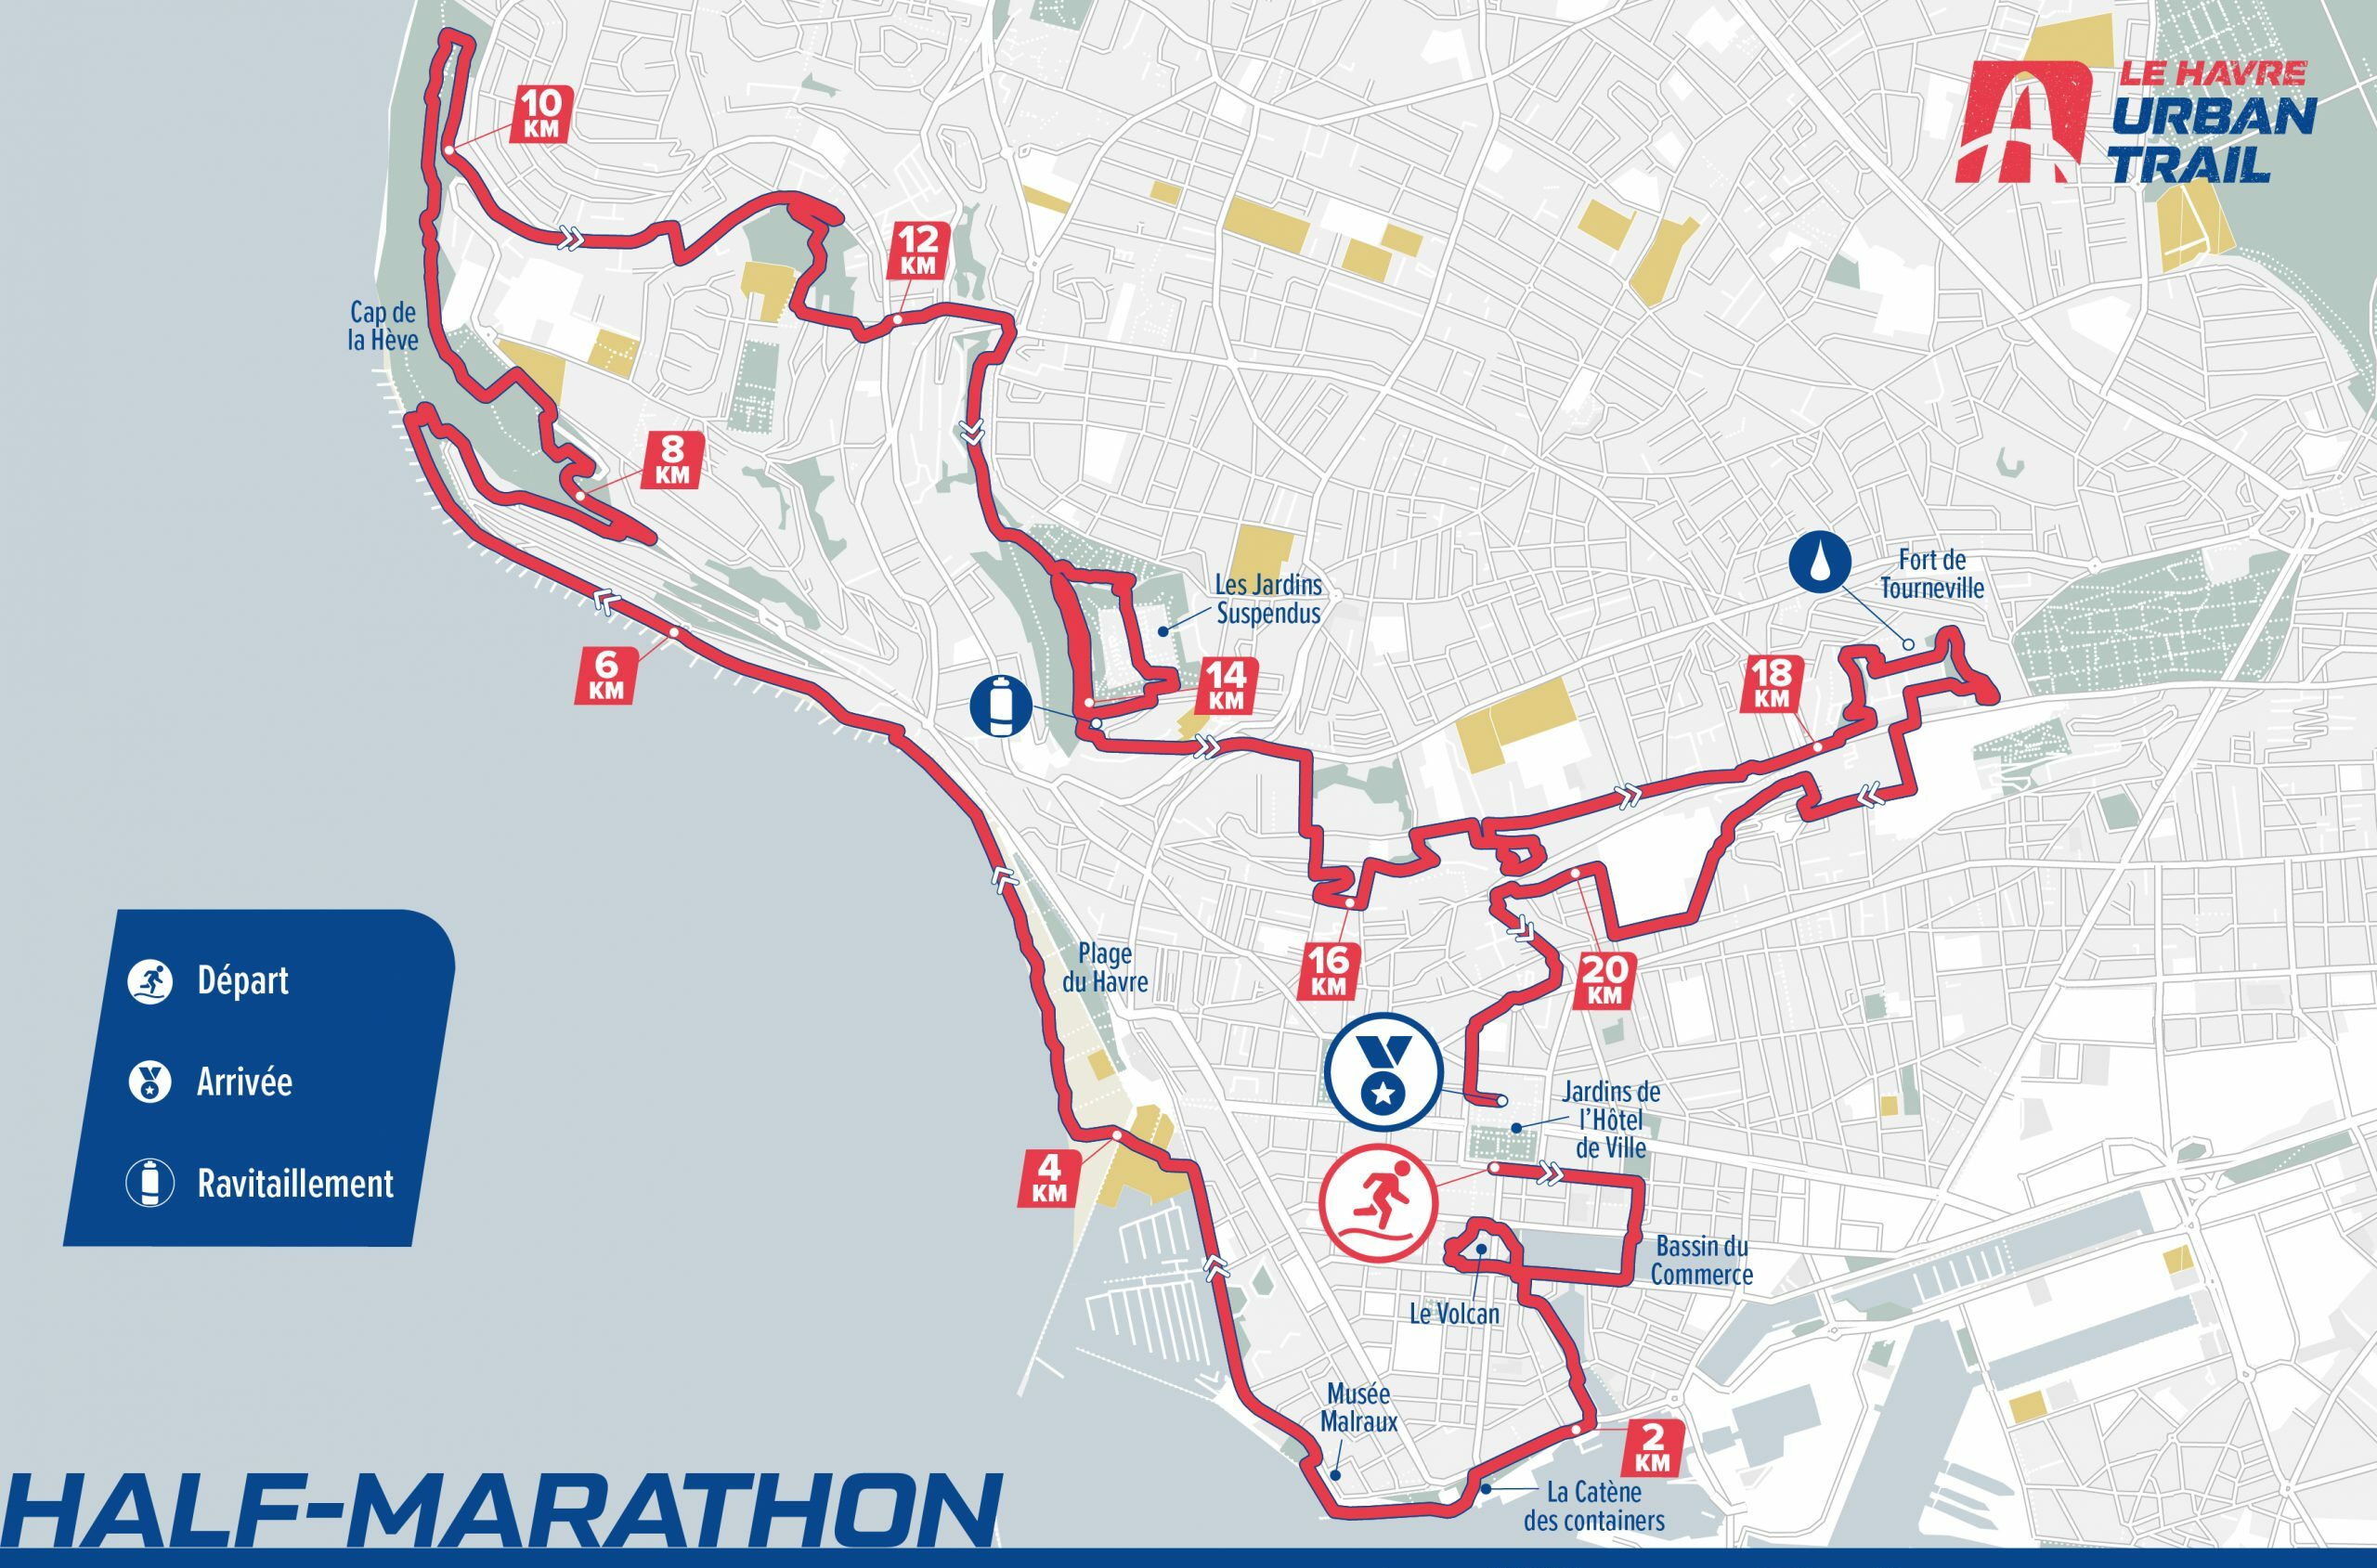 Parcours Half-Marathon 21km 